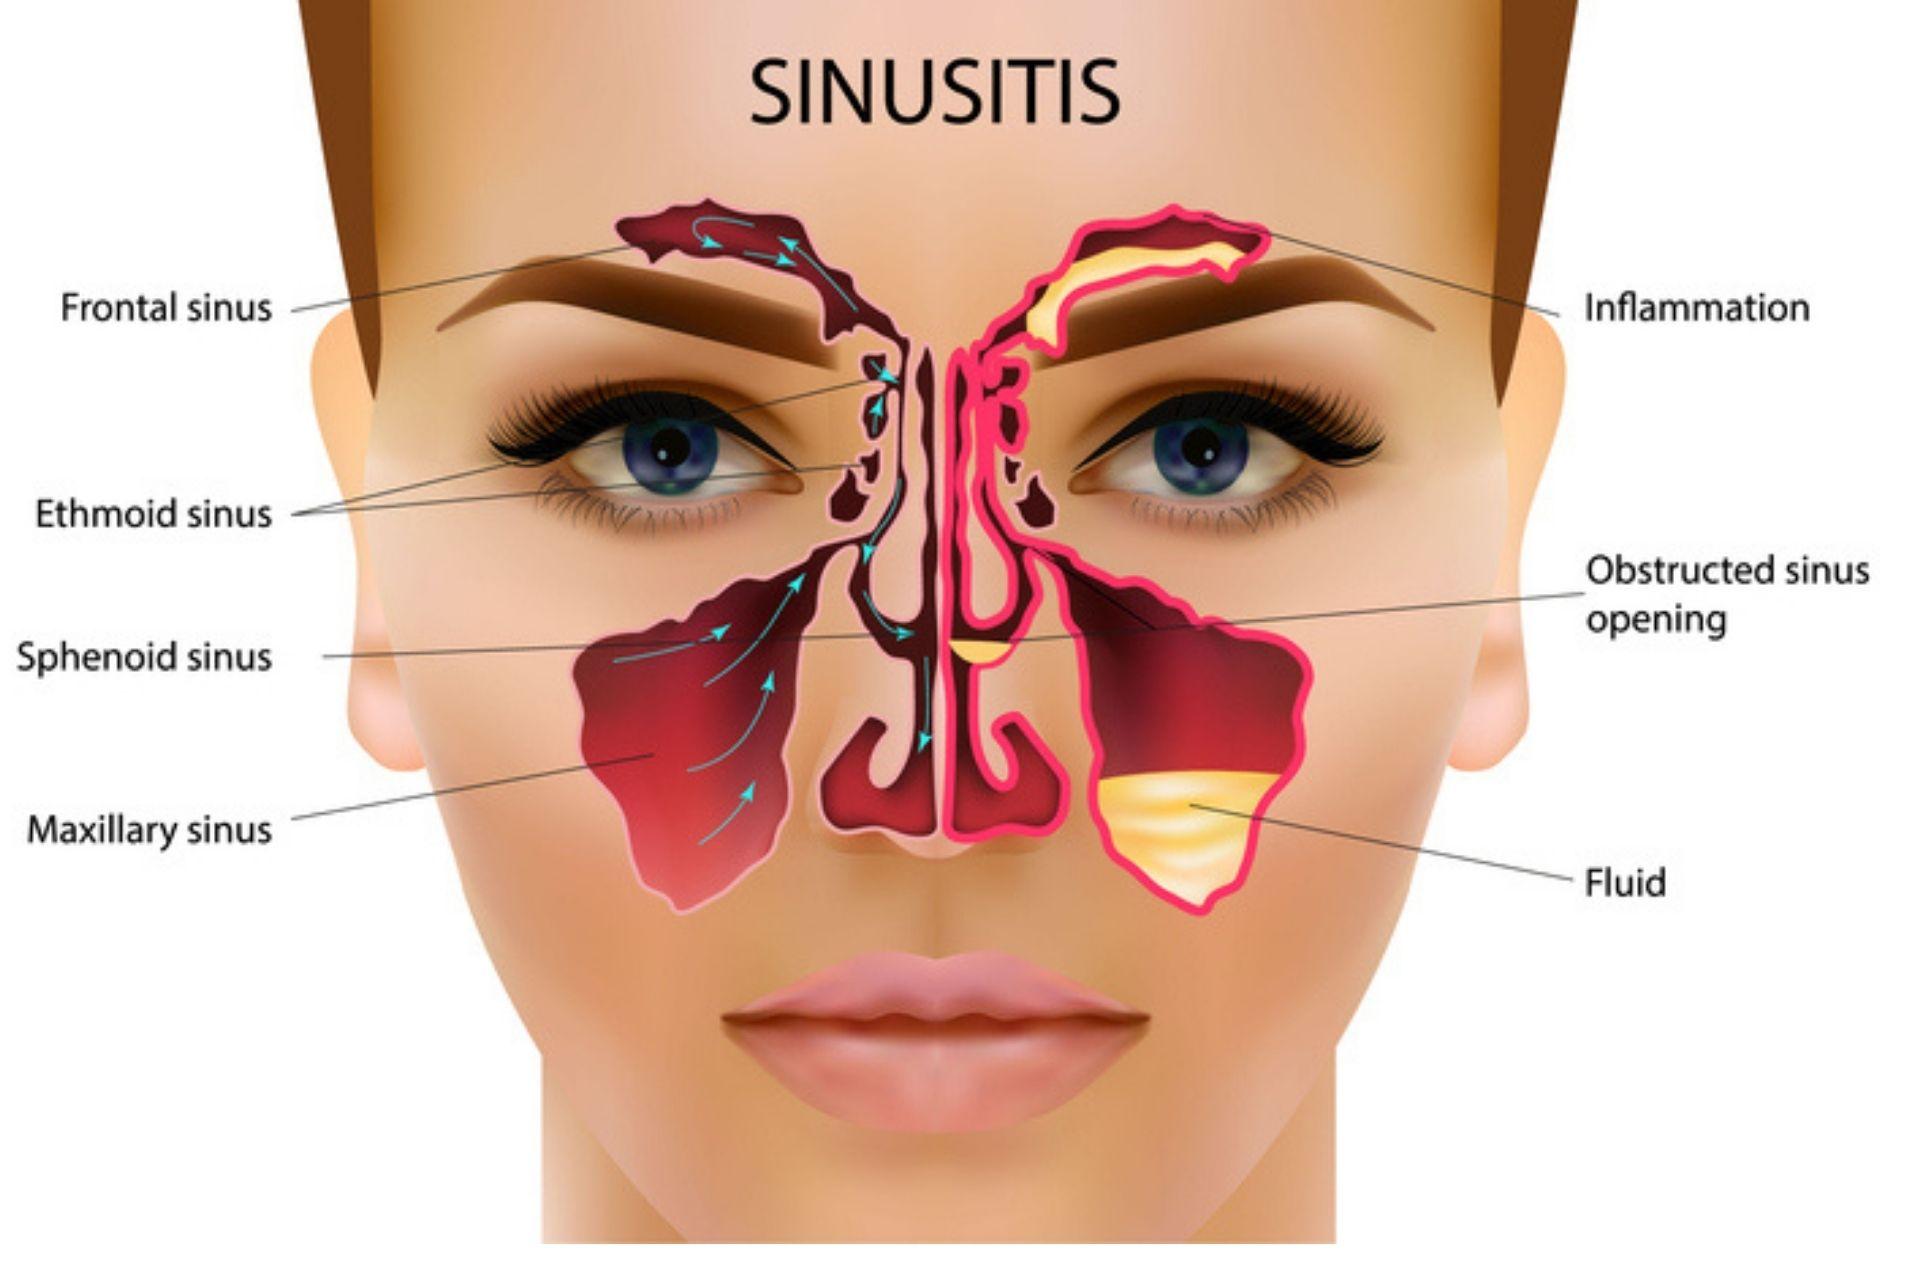 Maxillary sinusitis or an infection of the maxillary sinus